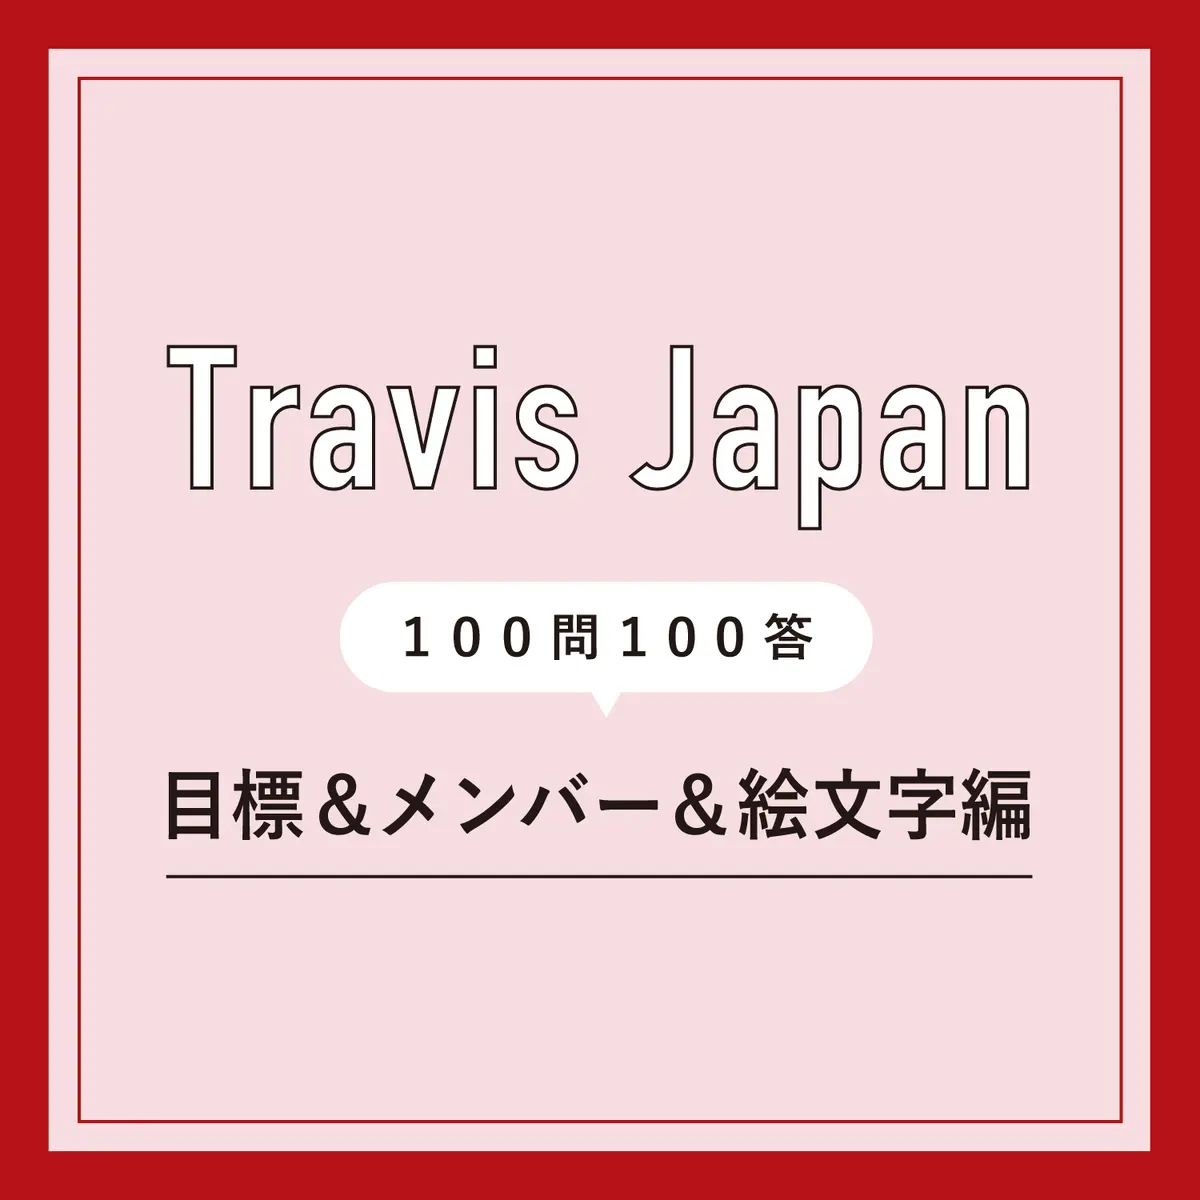 Travis Japan